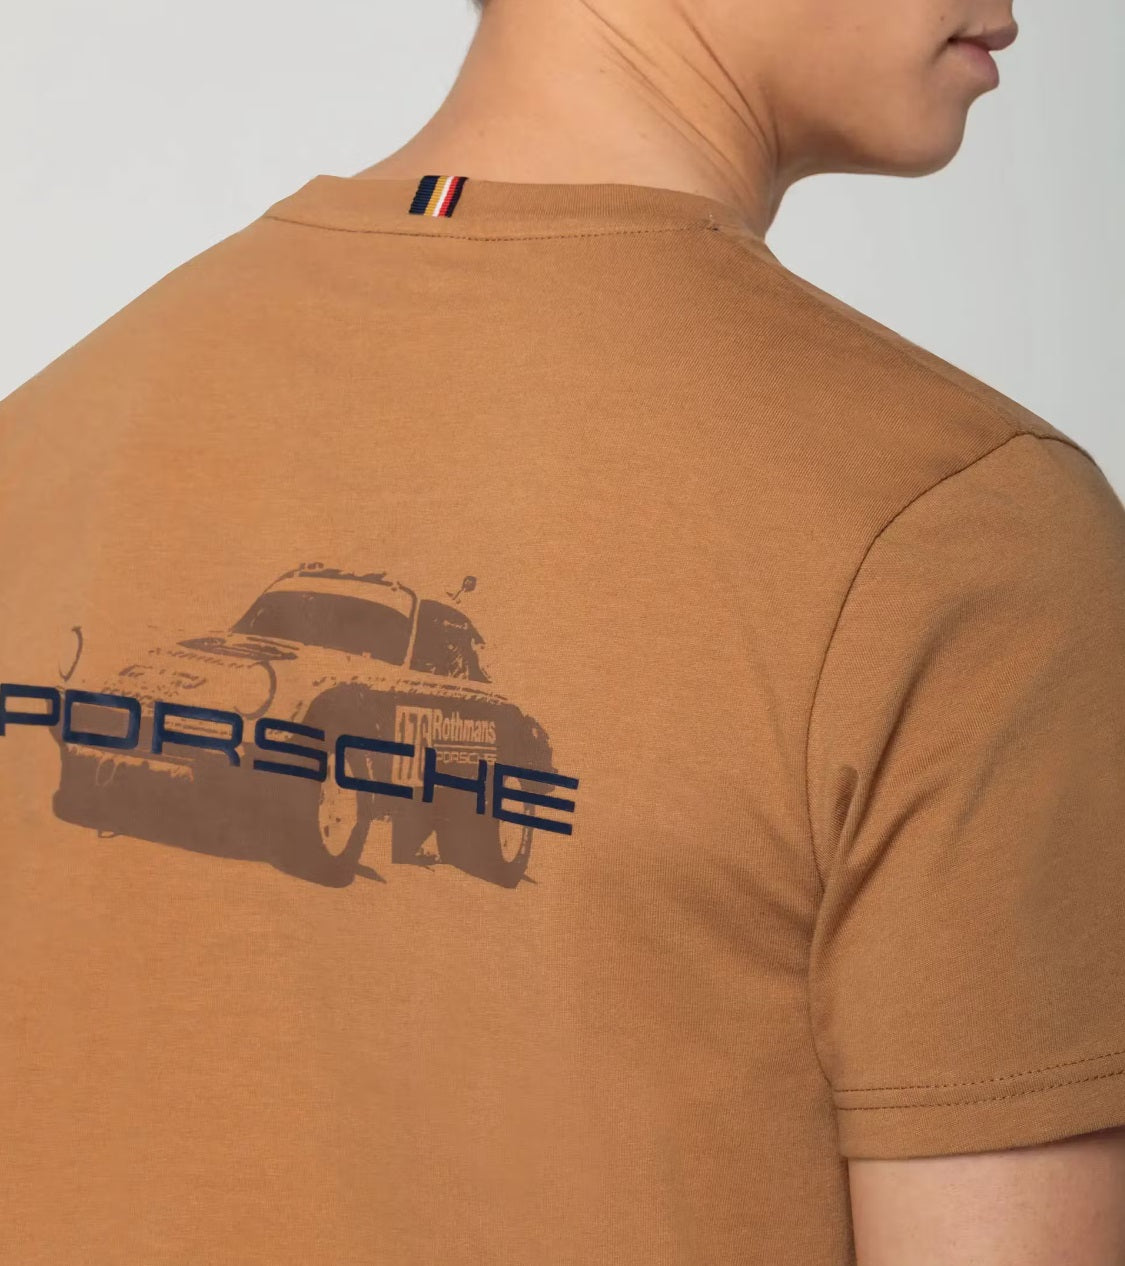 Porsche Unisex T-Shirt - Roughroads